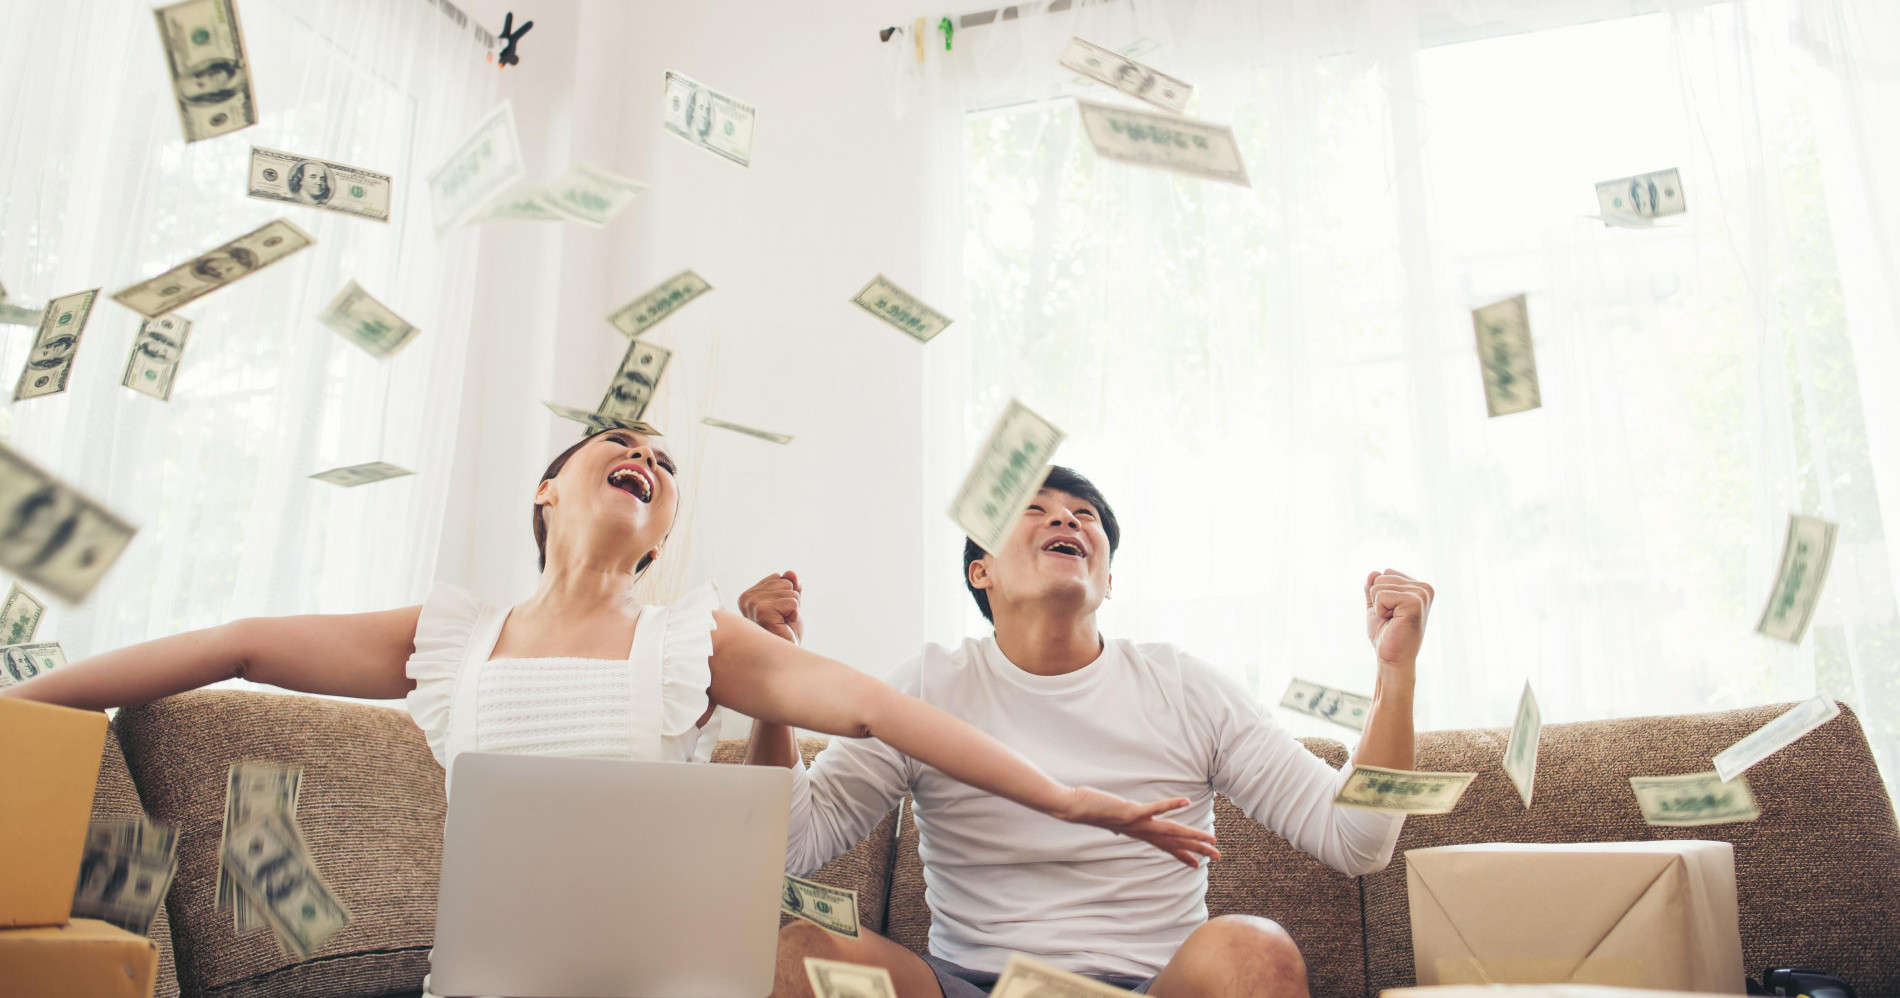 Ilustrasi orang bahagia dengan banyak uang. (Sumber gambar: freepik.com)